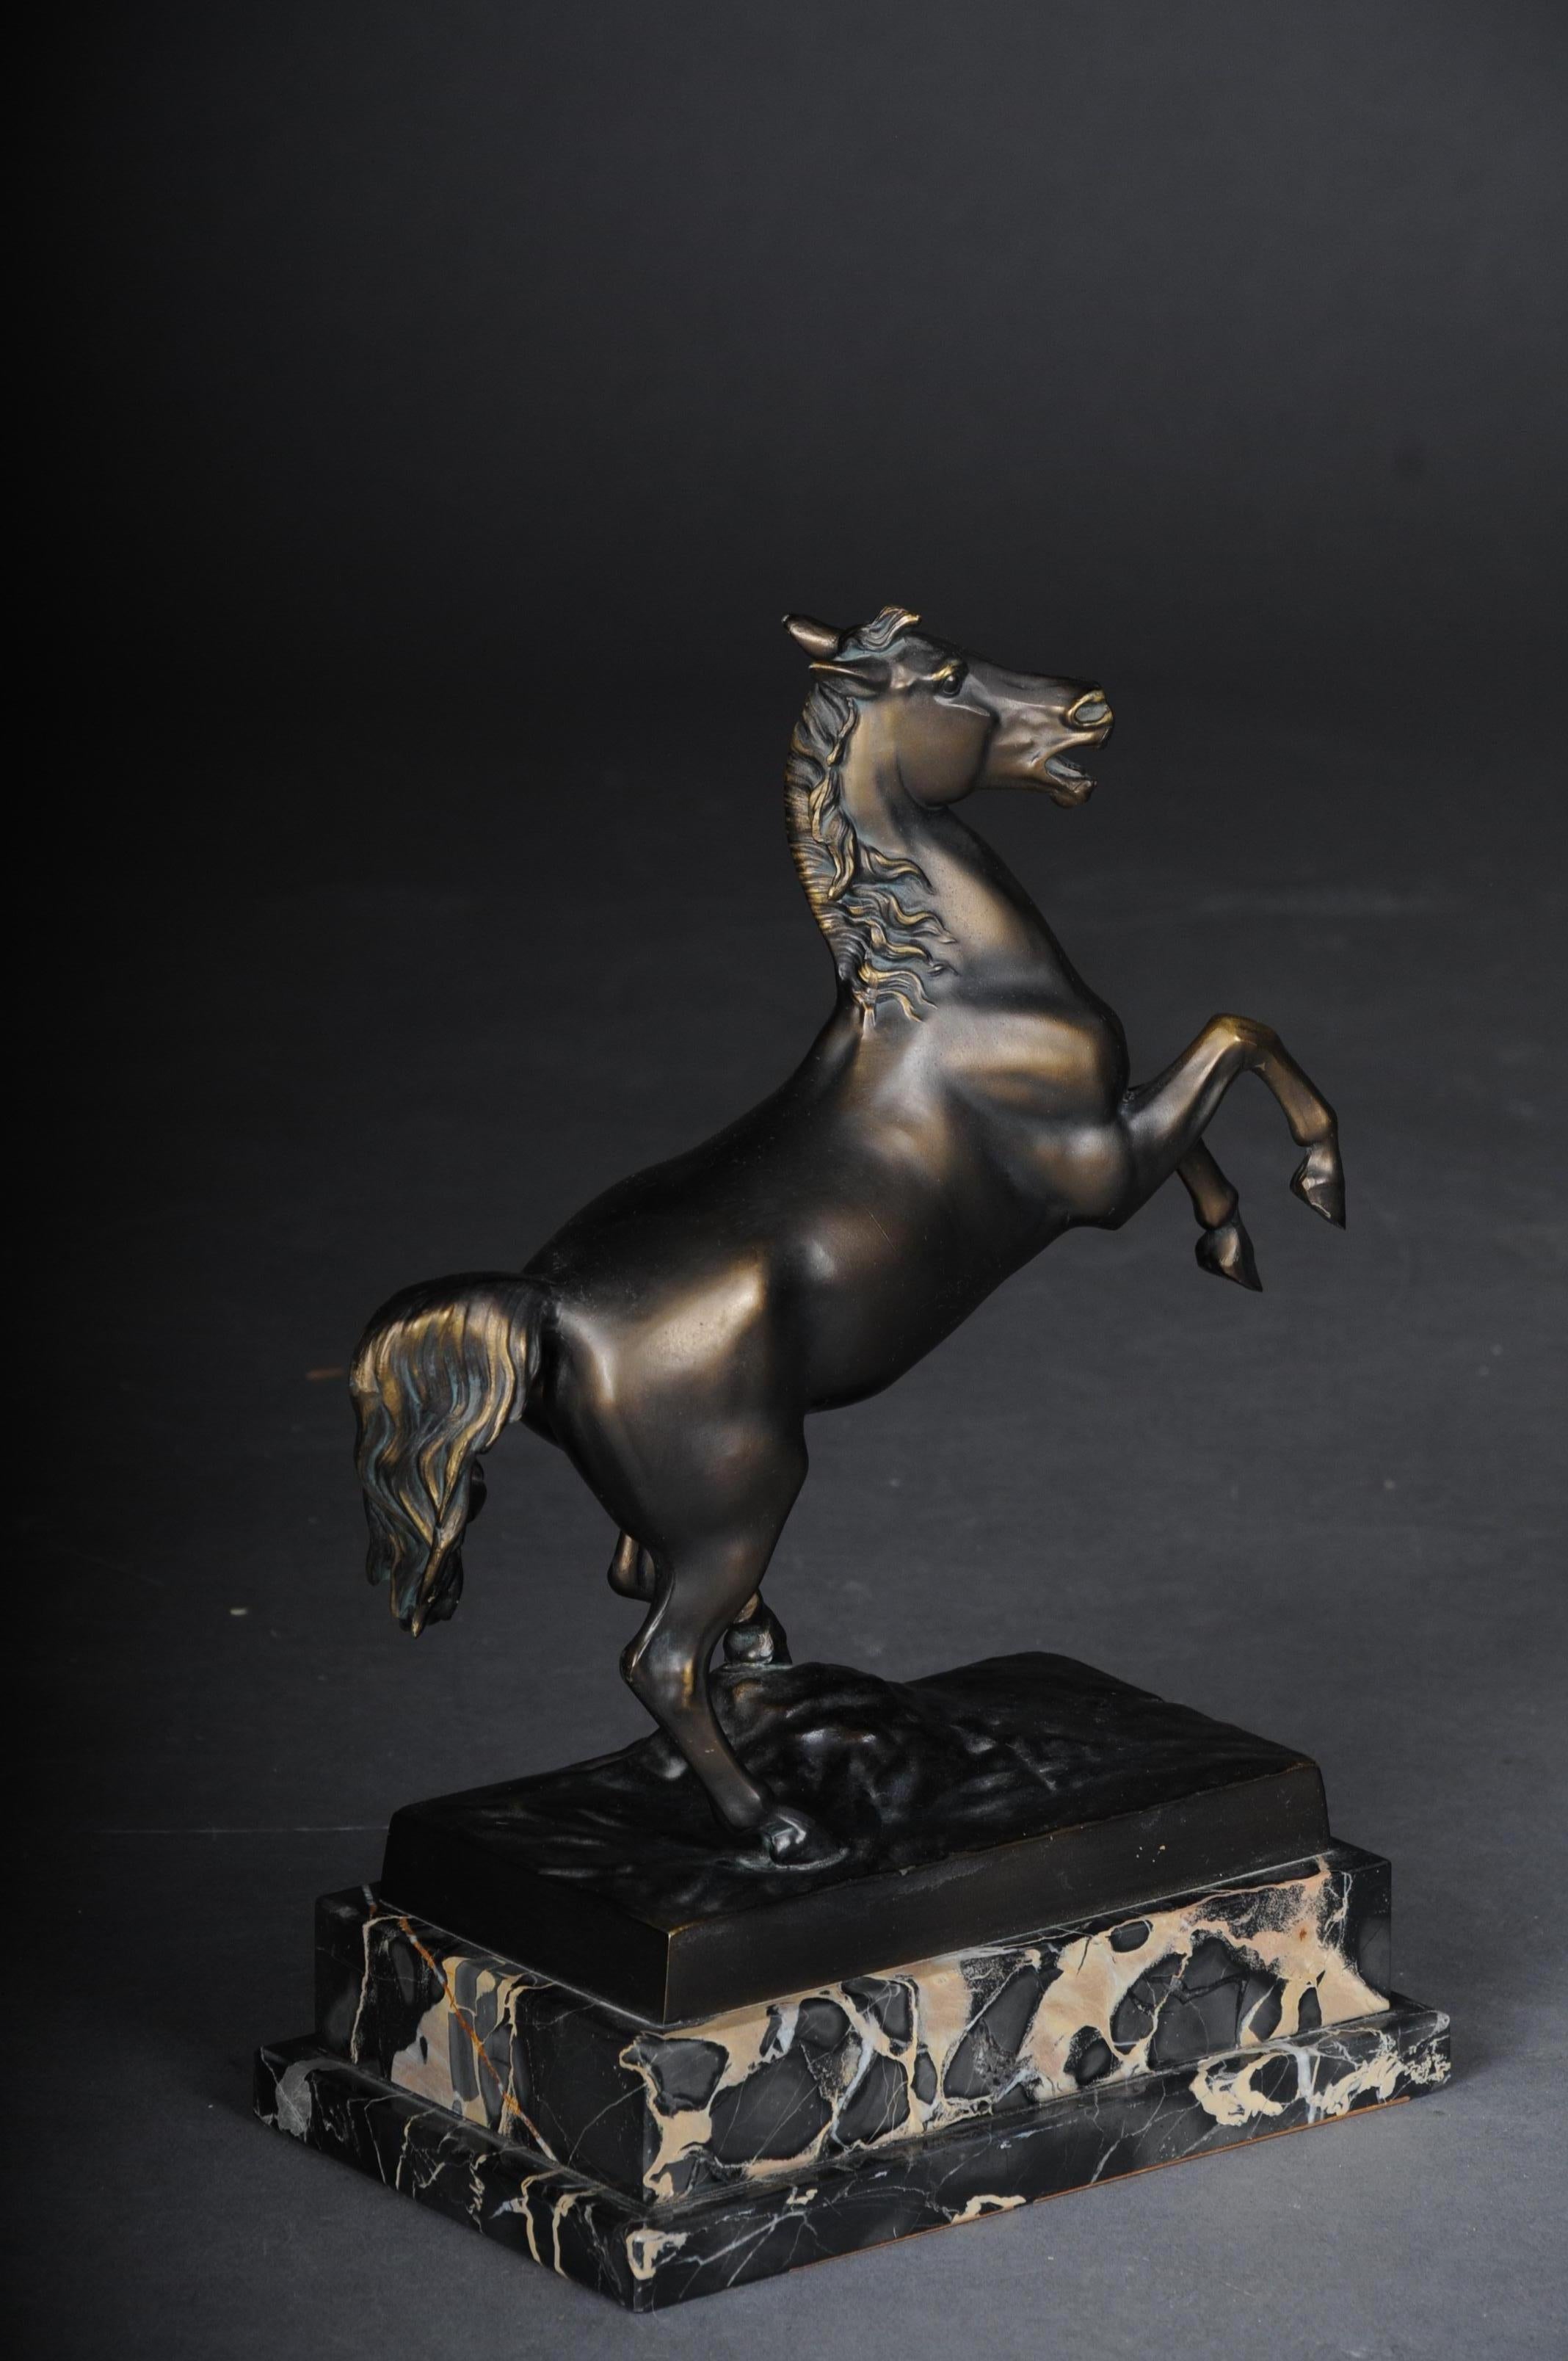 Pferdeskulptur / plastische Bronze patentiert auf Marmorsockel, um 1920

Pferd in Bronze patiniert. Ästhetisches Erscheinungsbild eines Pferdes auf einem Sockel aus schwarzem Marmor, um 1920.

(V-186).